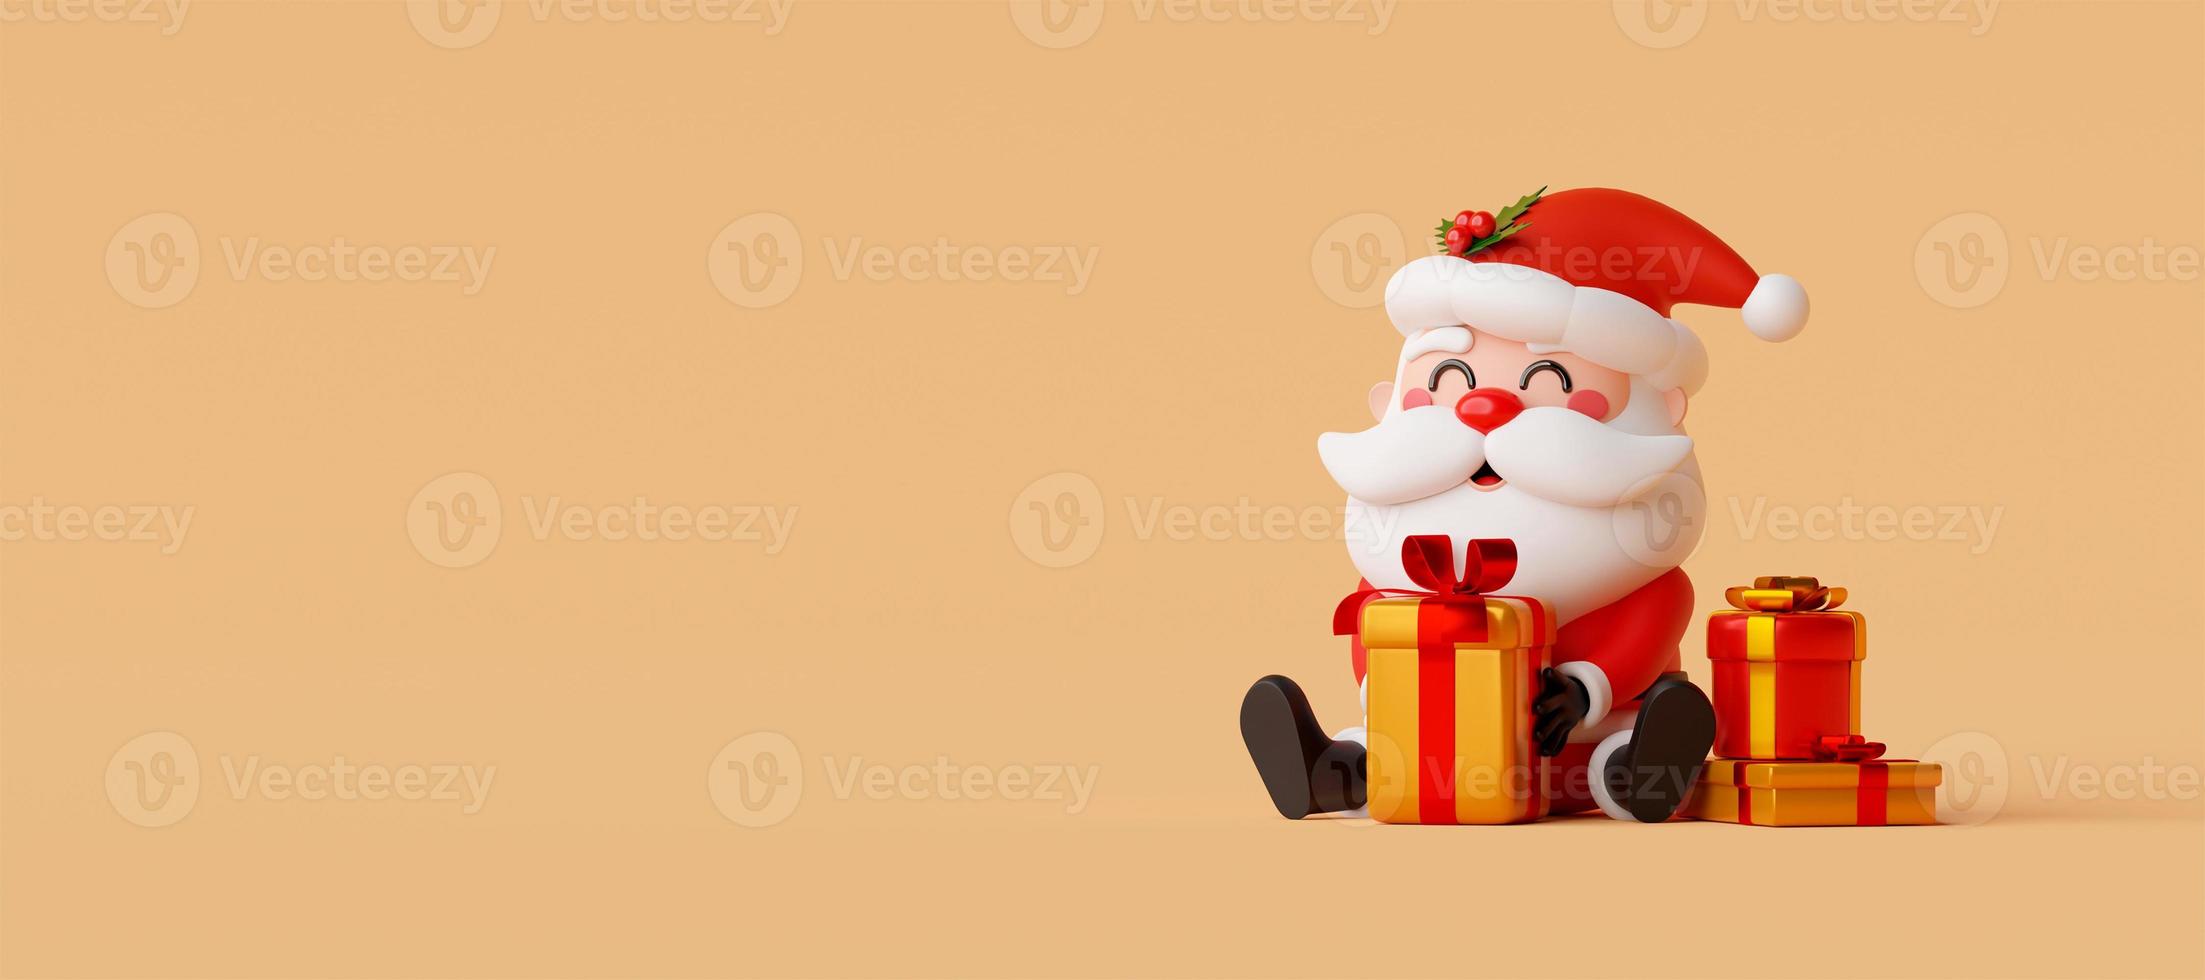 banner de natal de ilustração 3d, papai noel com presente de natal, feliz natal foto